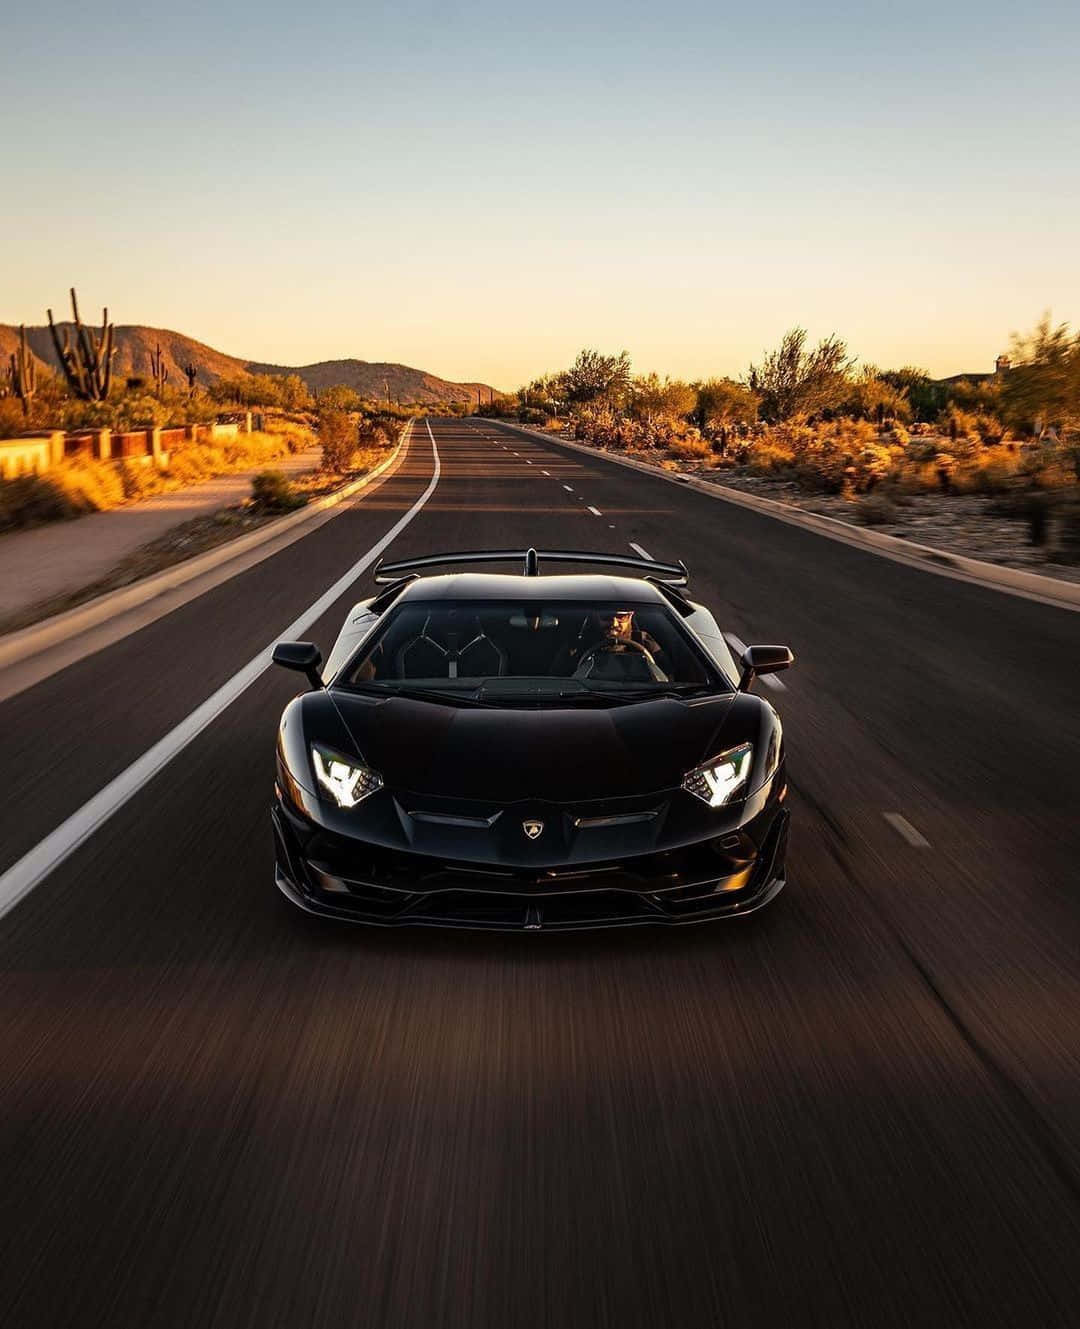 A Black Sports Car Driving Down A Desert Road